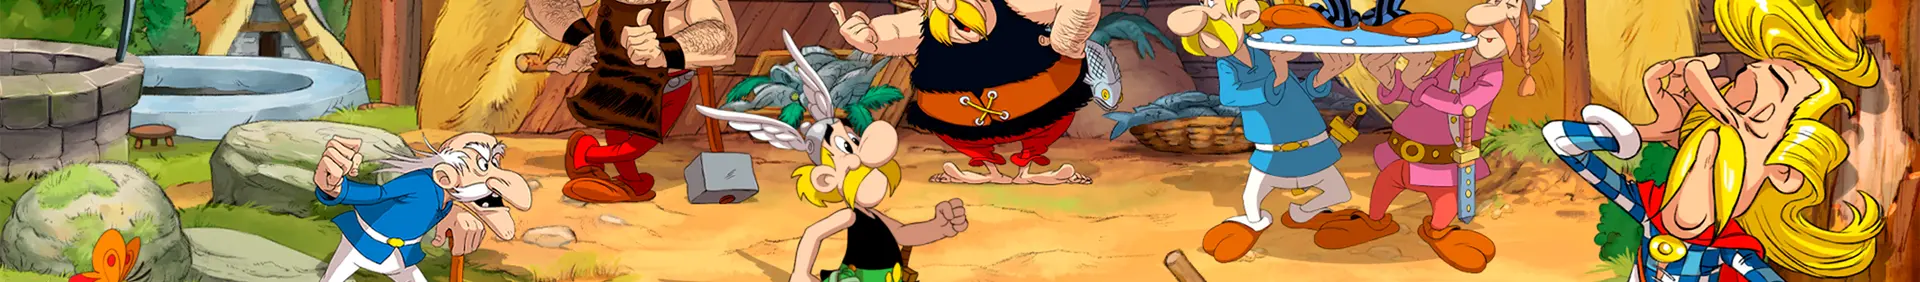 Asterix y Obelix - Slap Them All 2